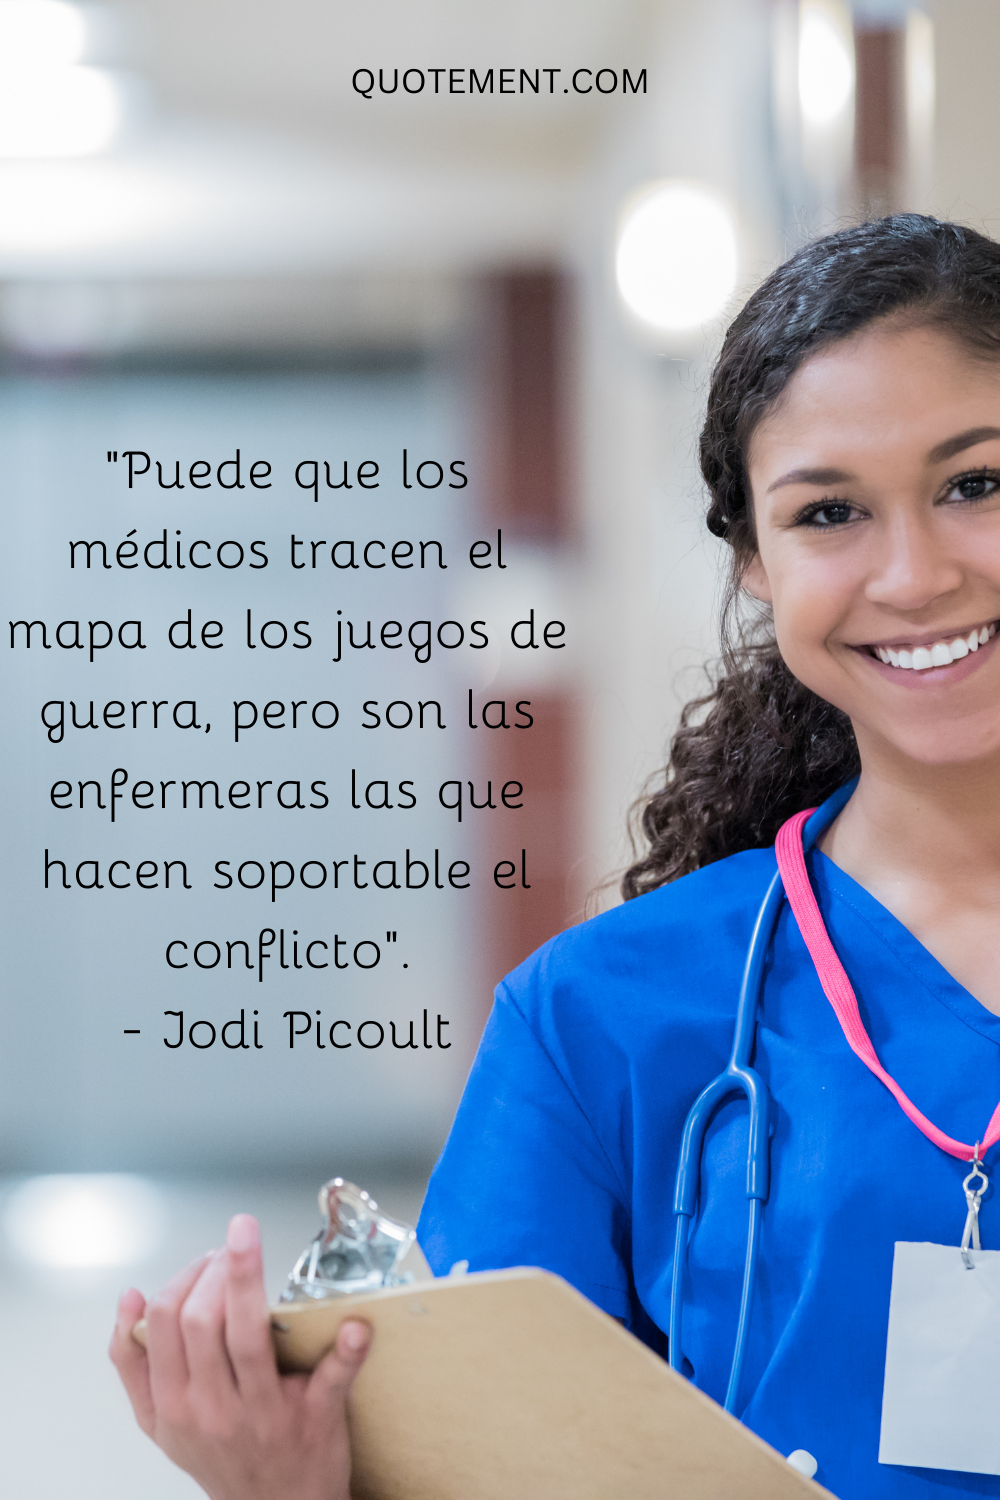 "Puede que los médicos tracen los juegos de guerra, pero son las enfermeras las que hacen soportable el conflicto". - Jodi Picoult